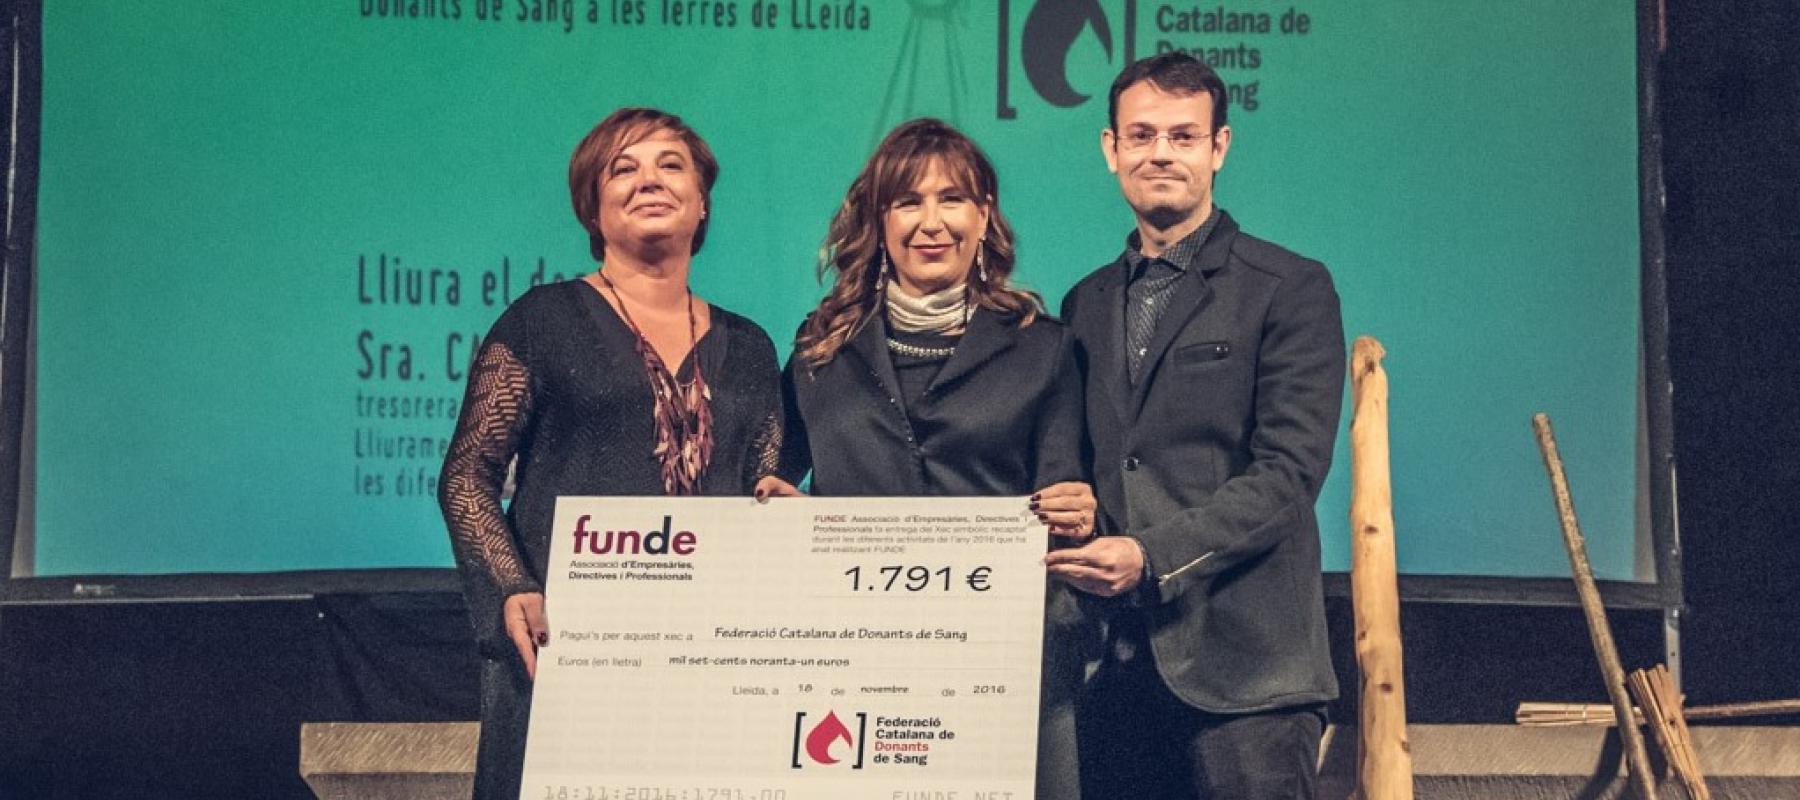 La XI edició dels Premis FUNDE guardonà a les Associacions de Donants de Sang de les Comarques de Lleida